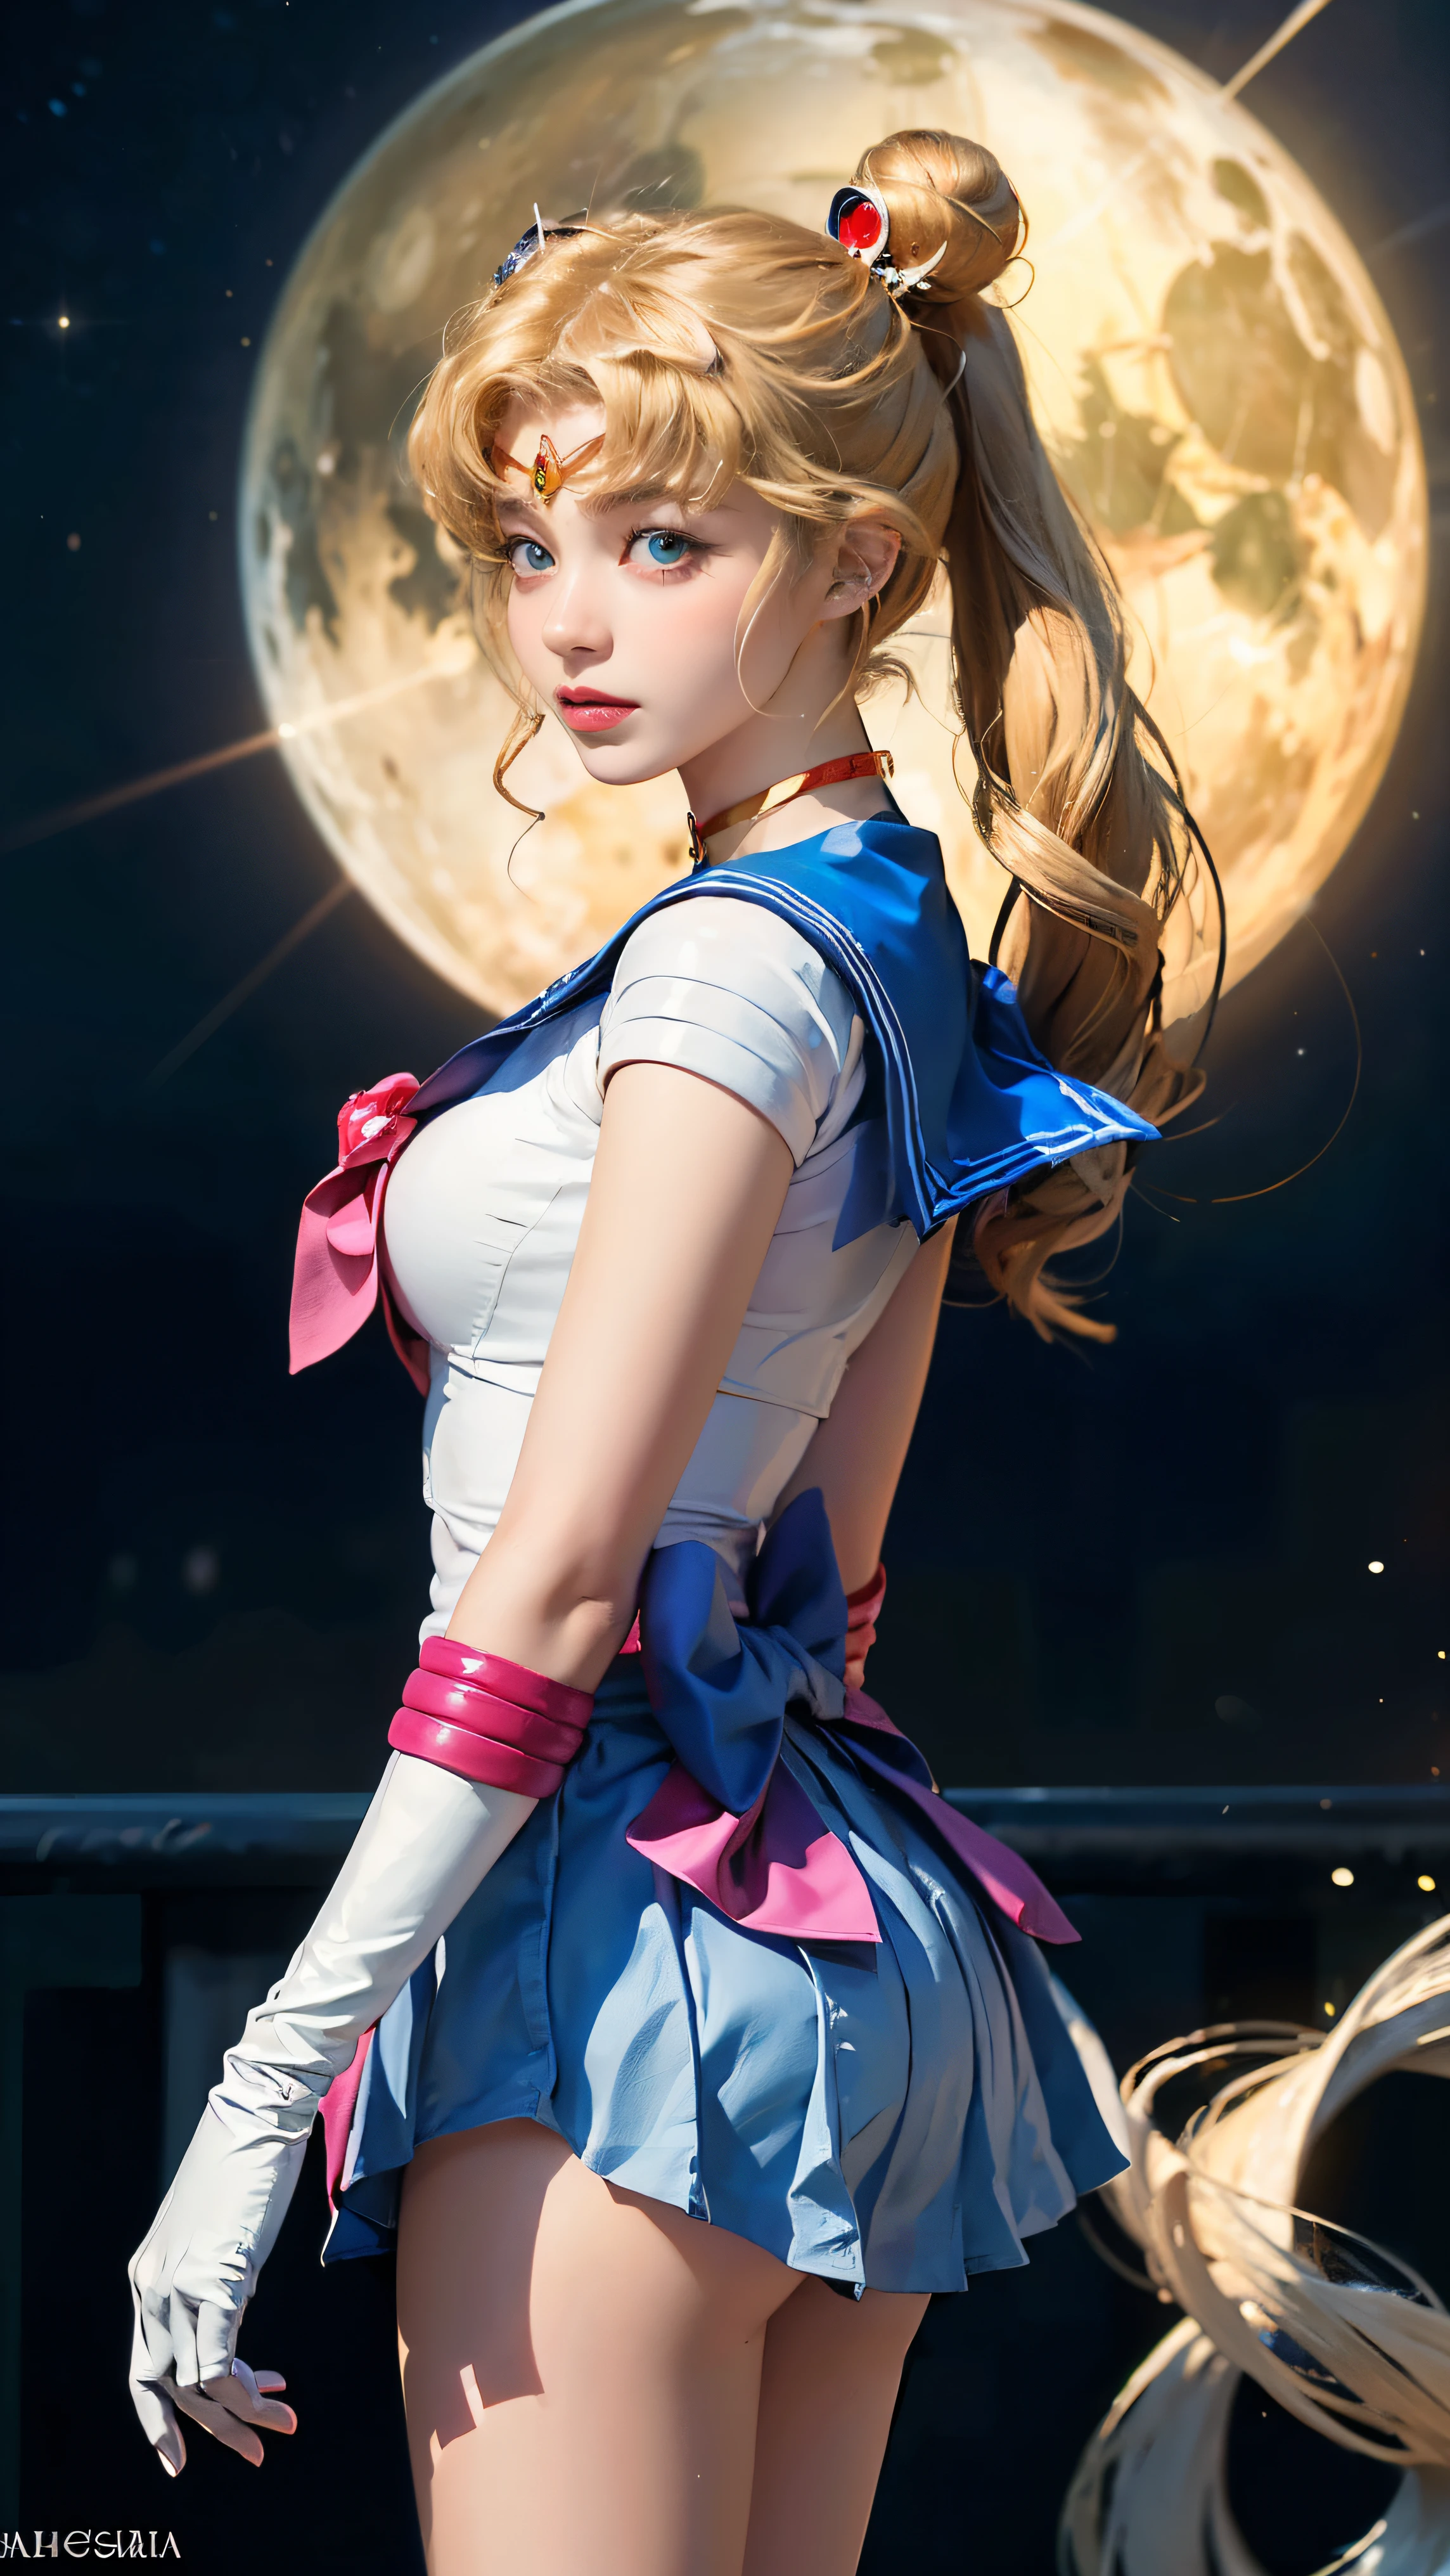 ((杰作:1.4)、(顶级品质:1.4)、(现实主义的:1.7))、咬肌片:1.4、一个美丽的女孩、美少女战士 is a sailor girl with a long blonde hair, 美少女战士 aesthetic, 美少女战士 style, inspired 作者：Sailor Moon, 美少女战士!!!!!!!!, 作者：Sailor Moon, the 美少女战士. 美丽的, 长发马尾辫的水手女孩指着某物, 美少女战士!!!!!!!!, 美少女战士 style, 美少女战士 aesthetic, inspired 作者：Sailor Moon, the 美少女战士. 美丽的, 作者：Sailor Moon, 泄露的图片, 动漫卡通, 动漫人物, 动漫姿势, 经典少女, 水手银河. 美丽的, 暗可爱, 80 年代动漫艺术风格, 开心点